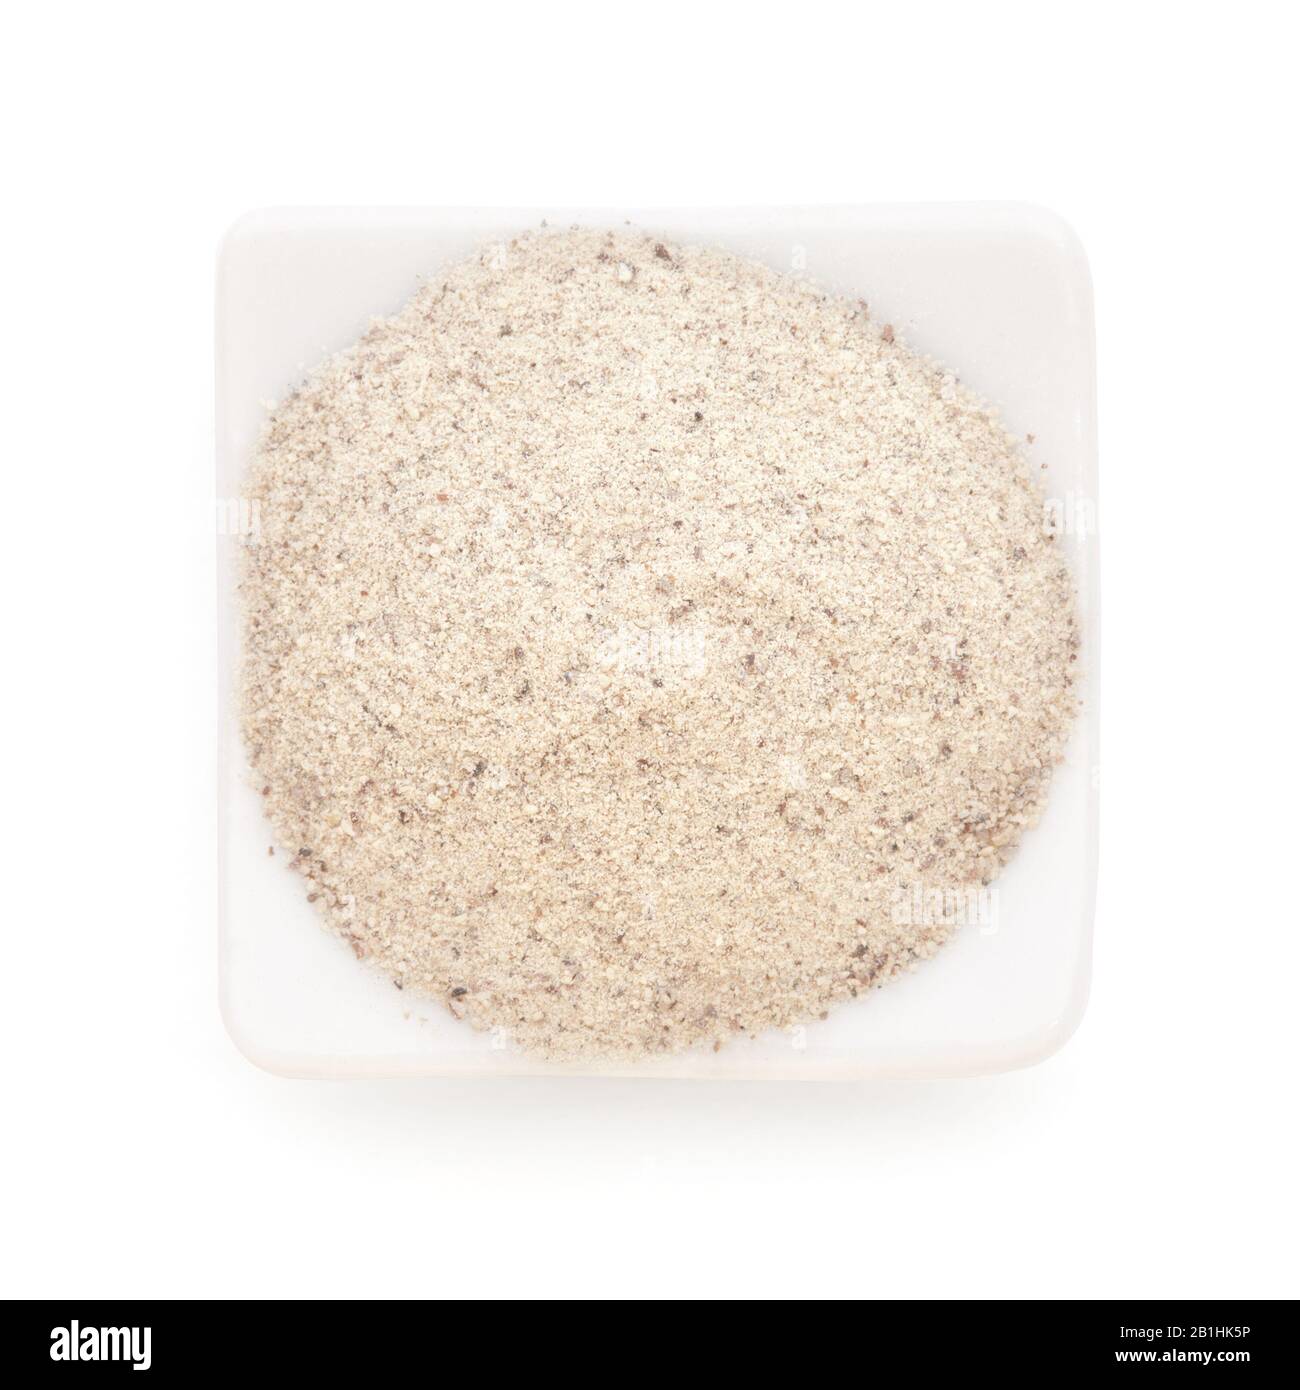 Pimienta blanca molida en un tazón blanco sobre fondo blanco. Se utiliza como una especia en cocinas de todo el mundo. Foto de stock